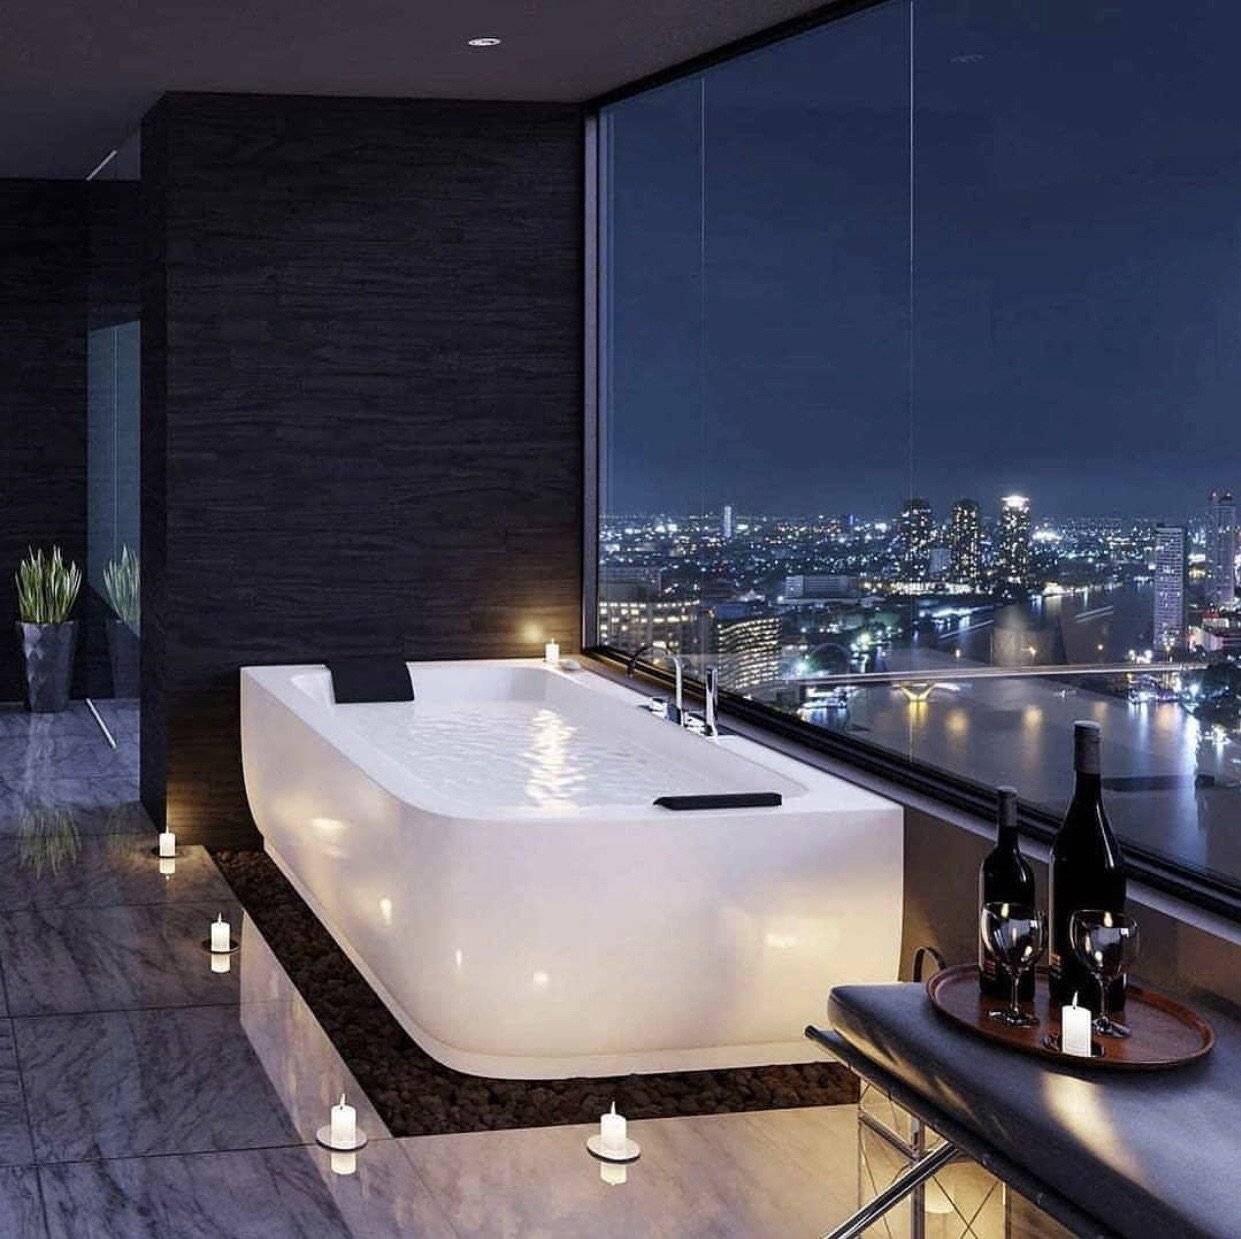 Самые красивые ванные комнаты - дизайн, интерьер, фото: самые красивые дома